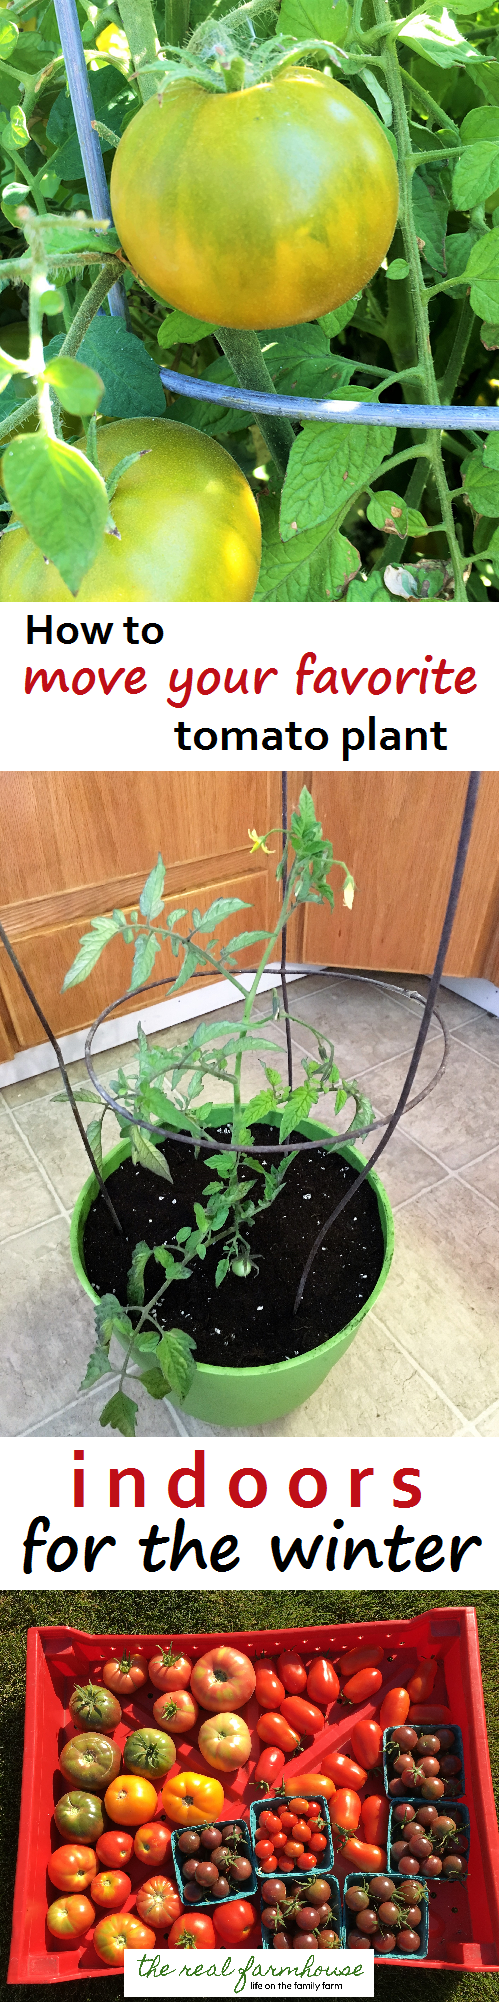 Färskare tomater även under vintern! Så här flyttar du din favorittomatplanta inomhus på ett säkert sätt